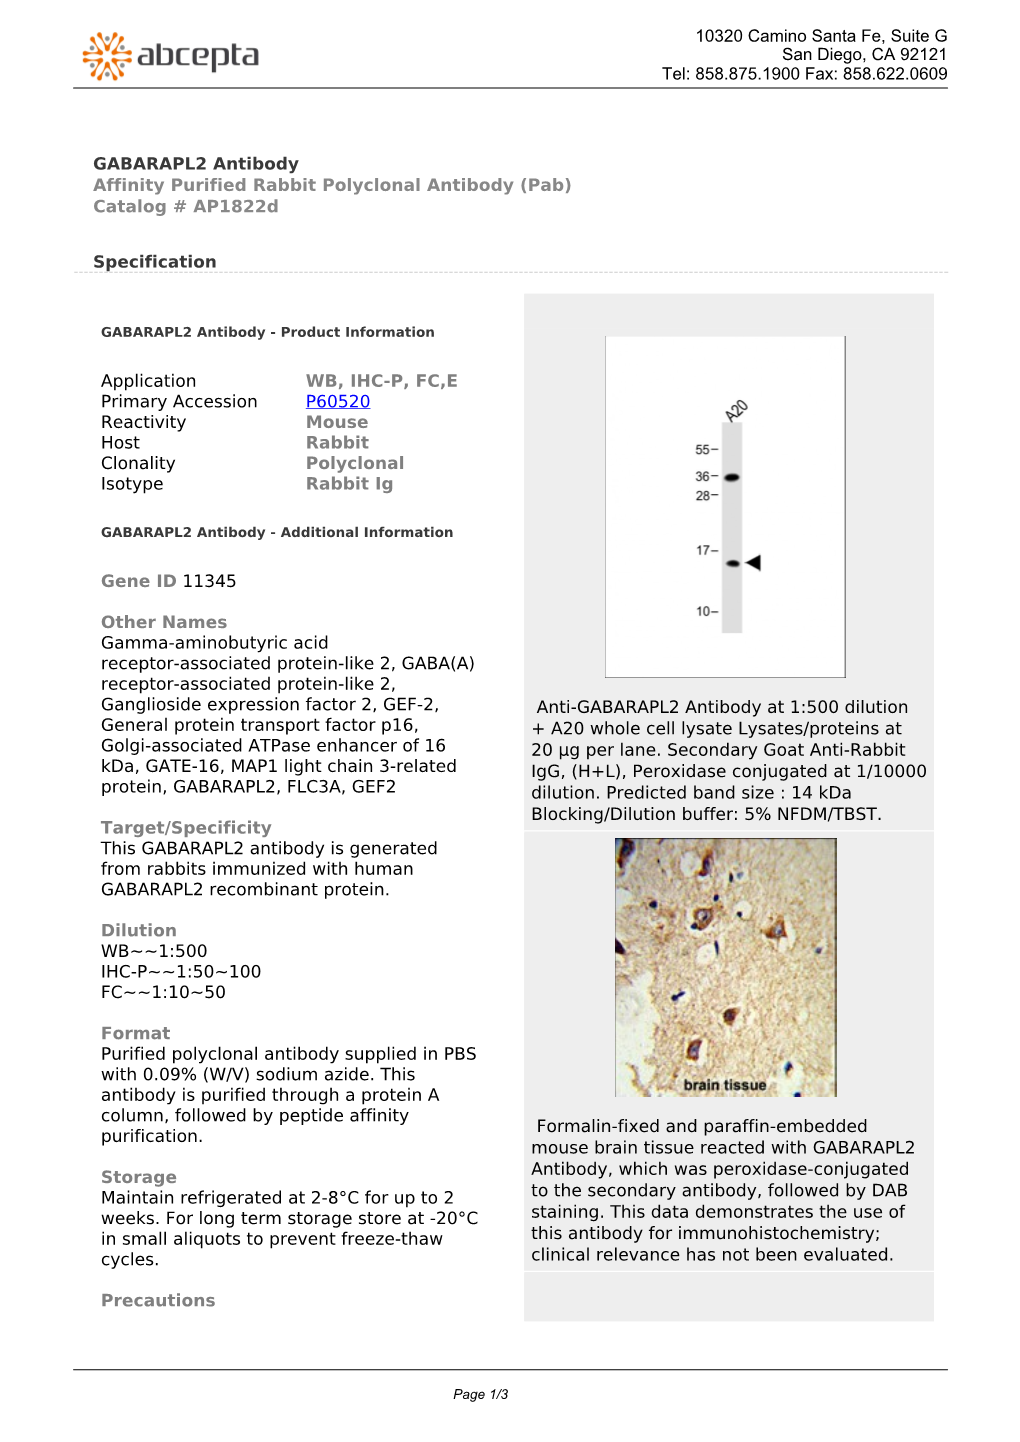 GABARAPL2 Antibody Affinity Purified Rabbit Polyclonal Antibody (Pab) Catalog # Ap1822d